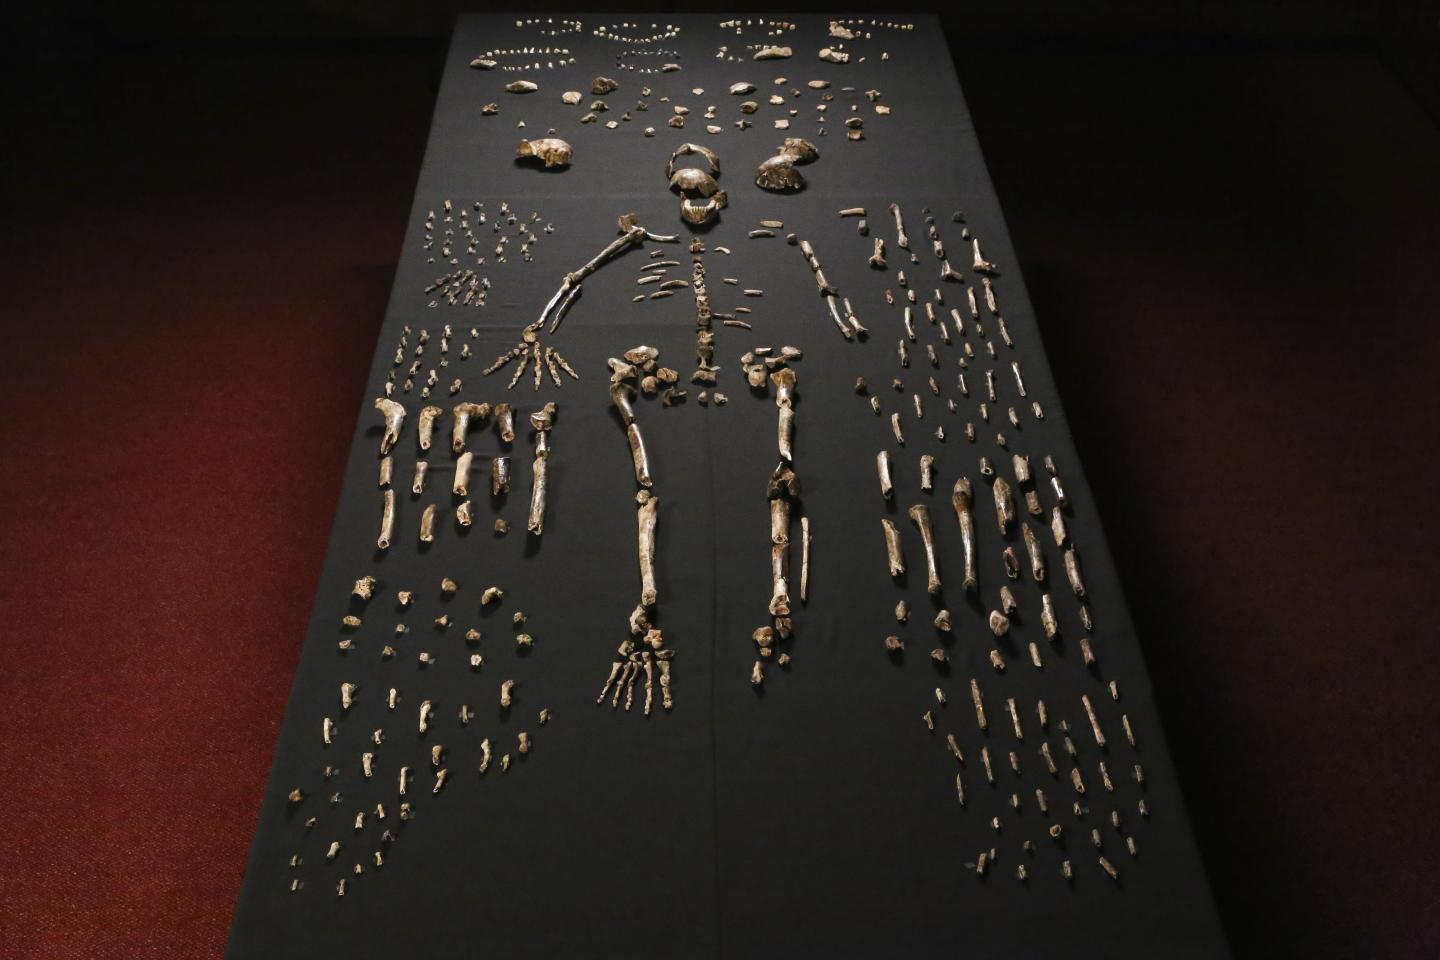 australopithecus sediba map